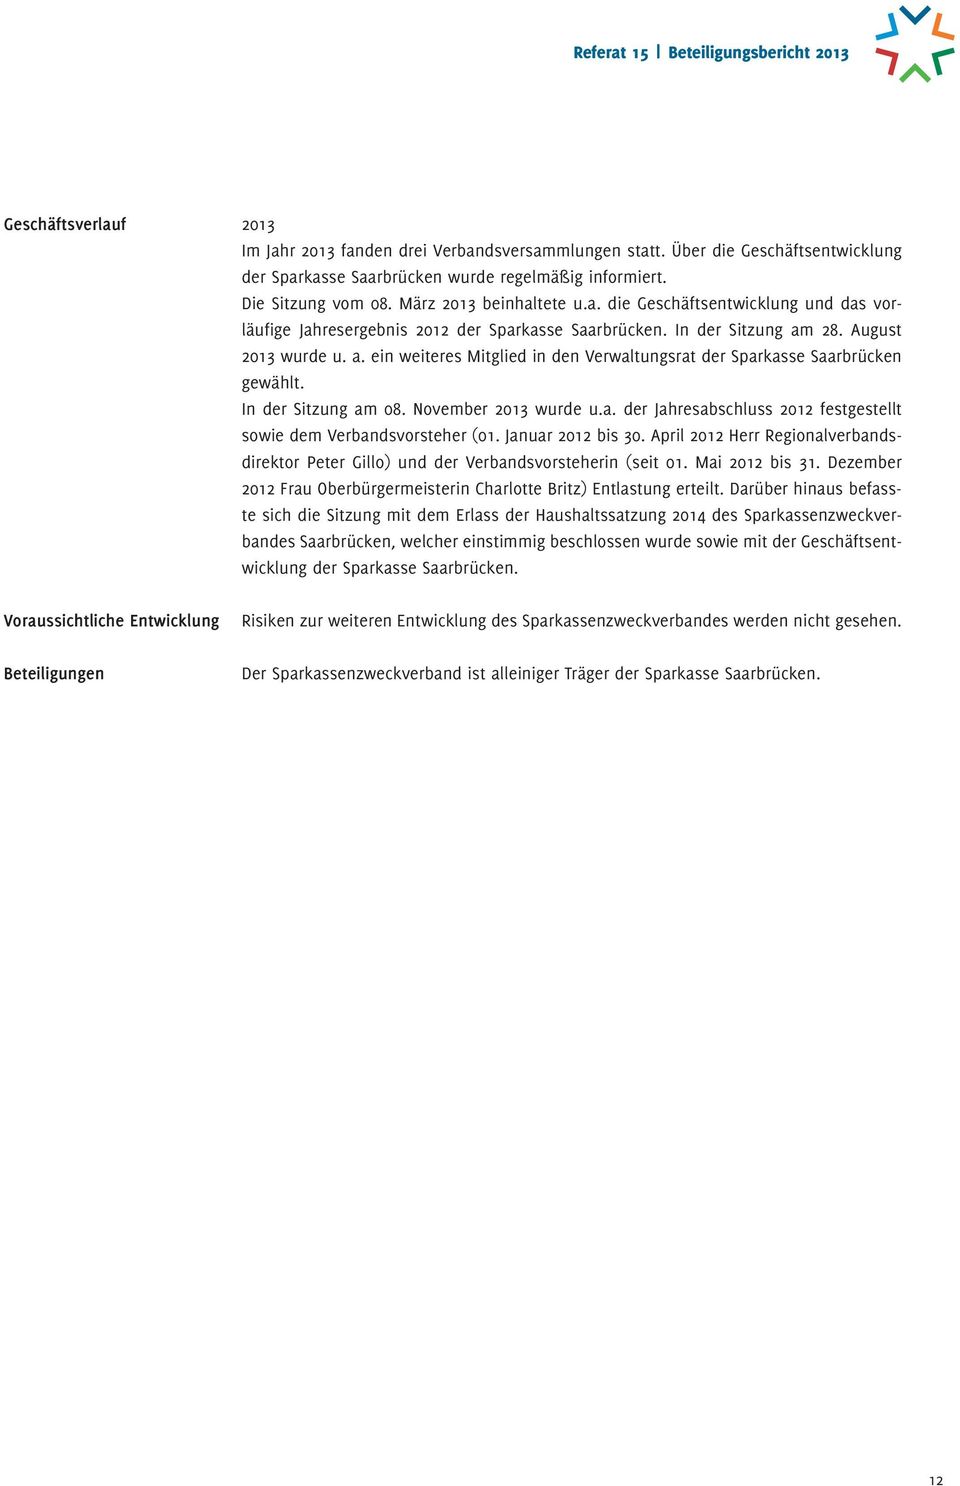 28. August 2013 wurde u. a. ein weiteres Mitglied in den Verwaltungsrat der Sparkasse Saarbrücken gewählt. In der Sitzung am 08. November 2013 wurde u.a. der Jahresabschluss 2012 festgestellt sowie dem Verbandsvorsteher (01.